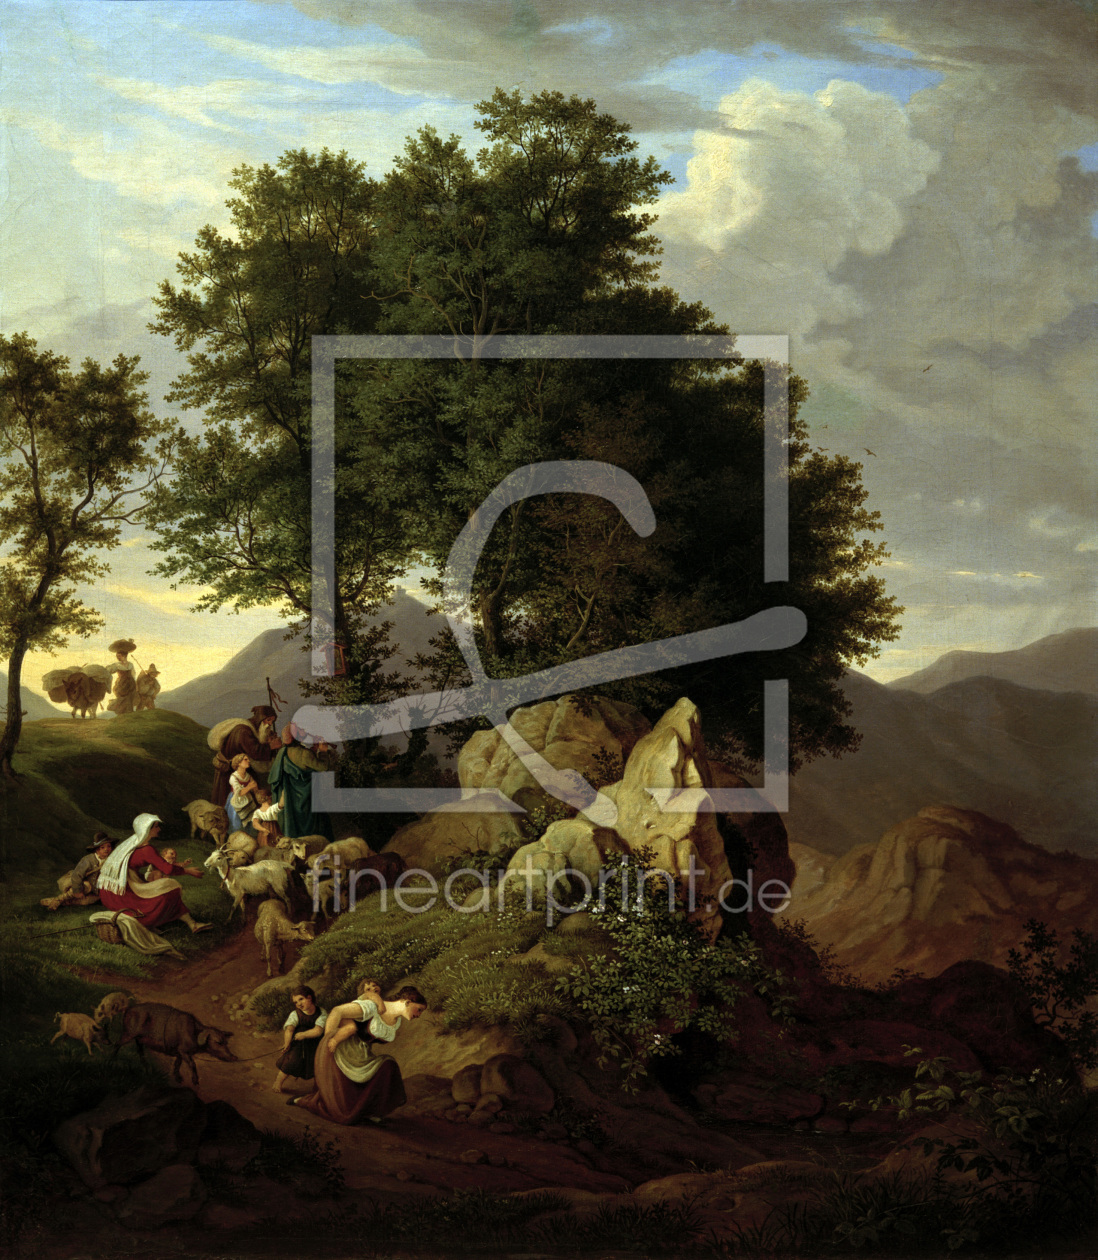 Bild-Nr.: 30006970 Richter / Shepherds at Devotional / 1833 erstellt von Richter, Ludwig